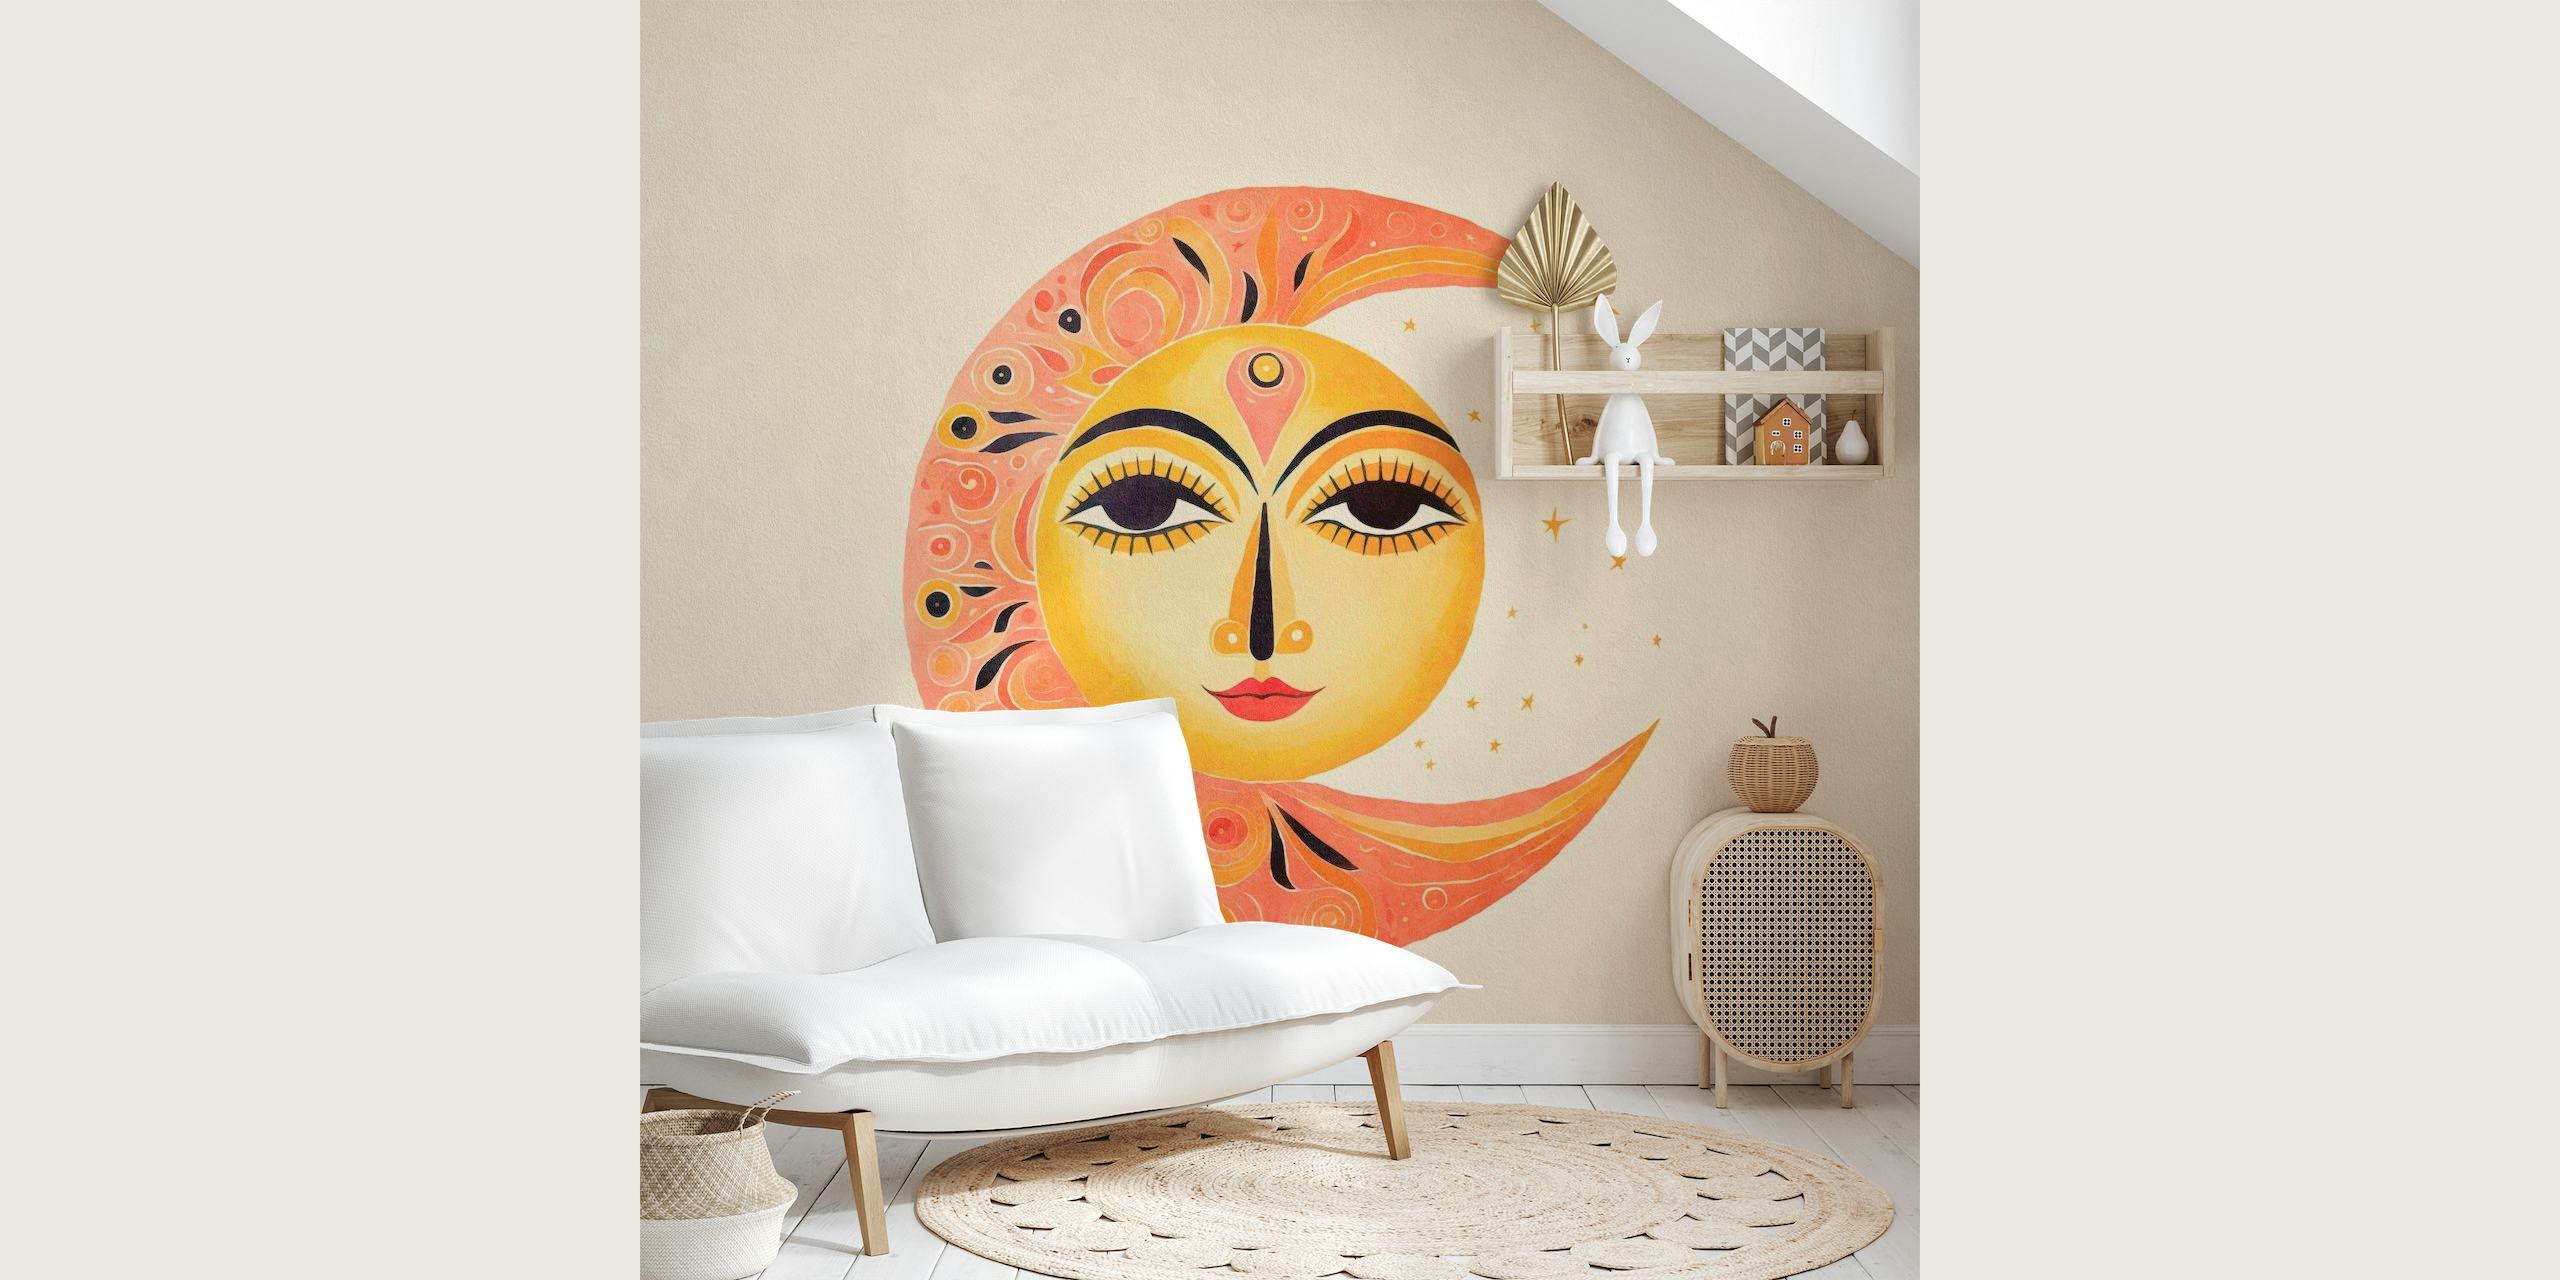 Skurriles Sun Moon Face-Wandbild mit harmonischem Sonnen- und Monddesign